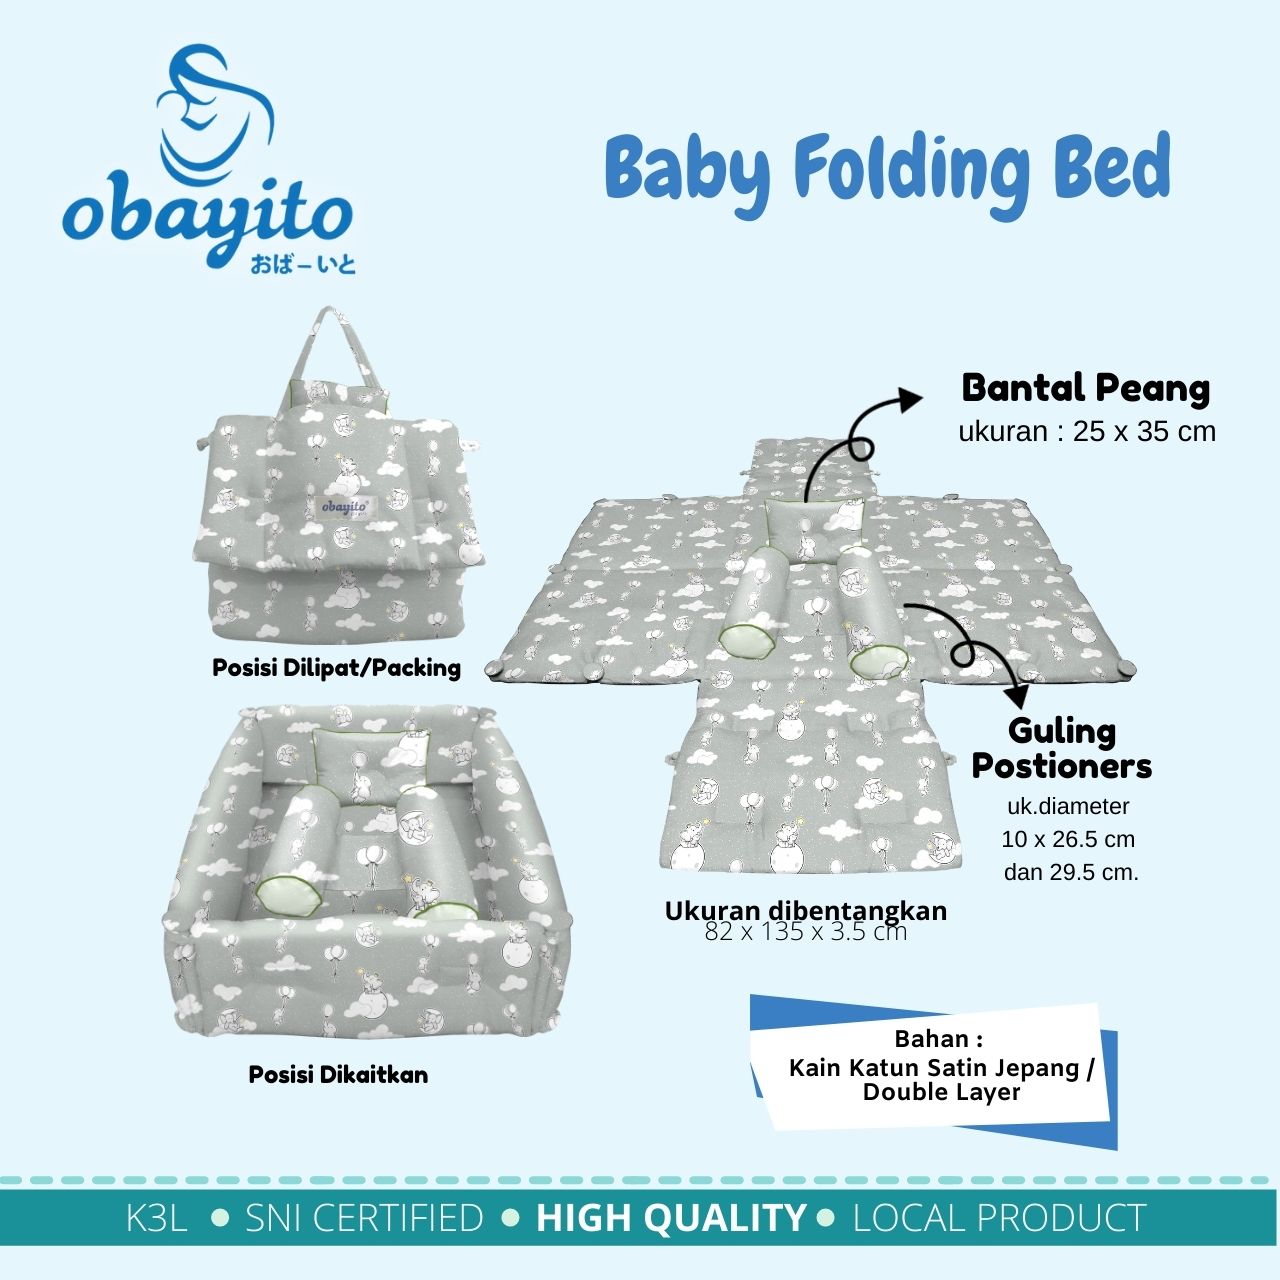 Ukuran Baby Folding Bed Obayito